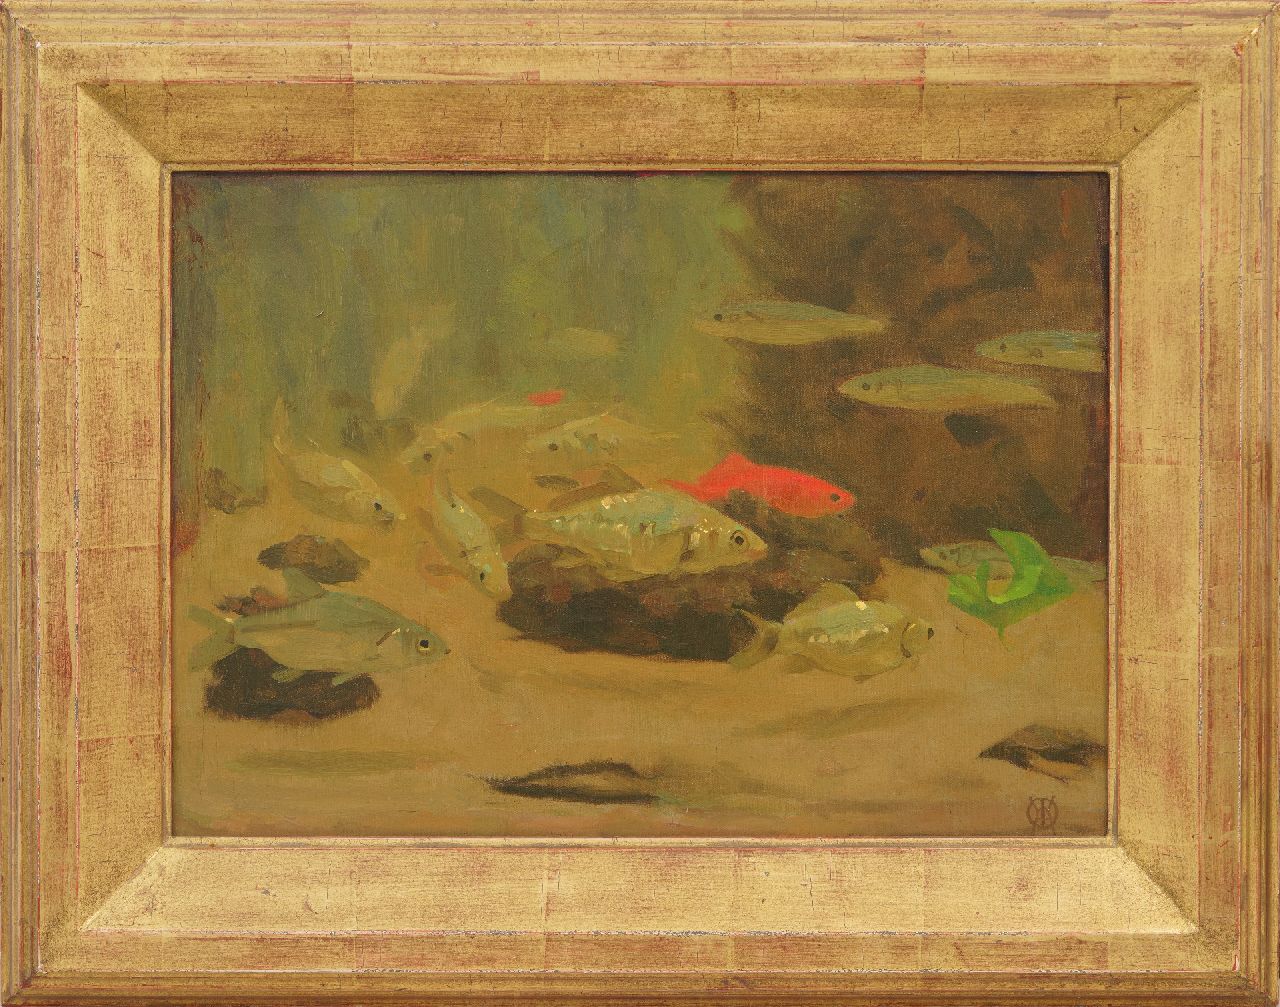 Dijsselhof G.W.  | Gerrit Willem Dijsselhof, Fish in the Artis aquarium, oil on canvas 28.7 x 39.9 cm, signed l.r. with monogram